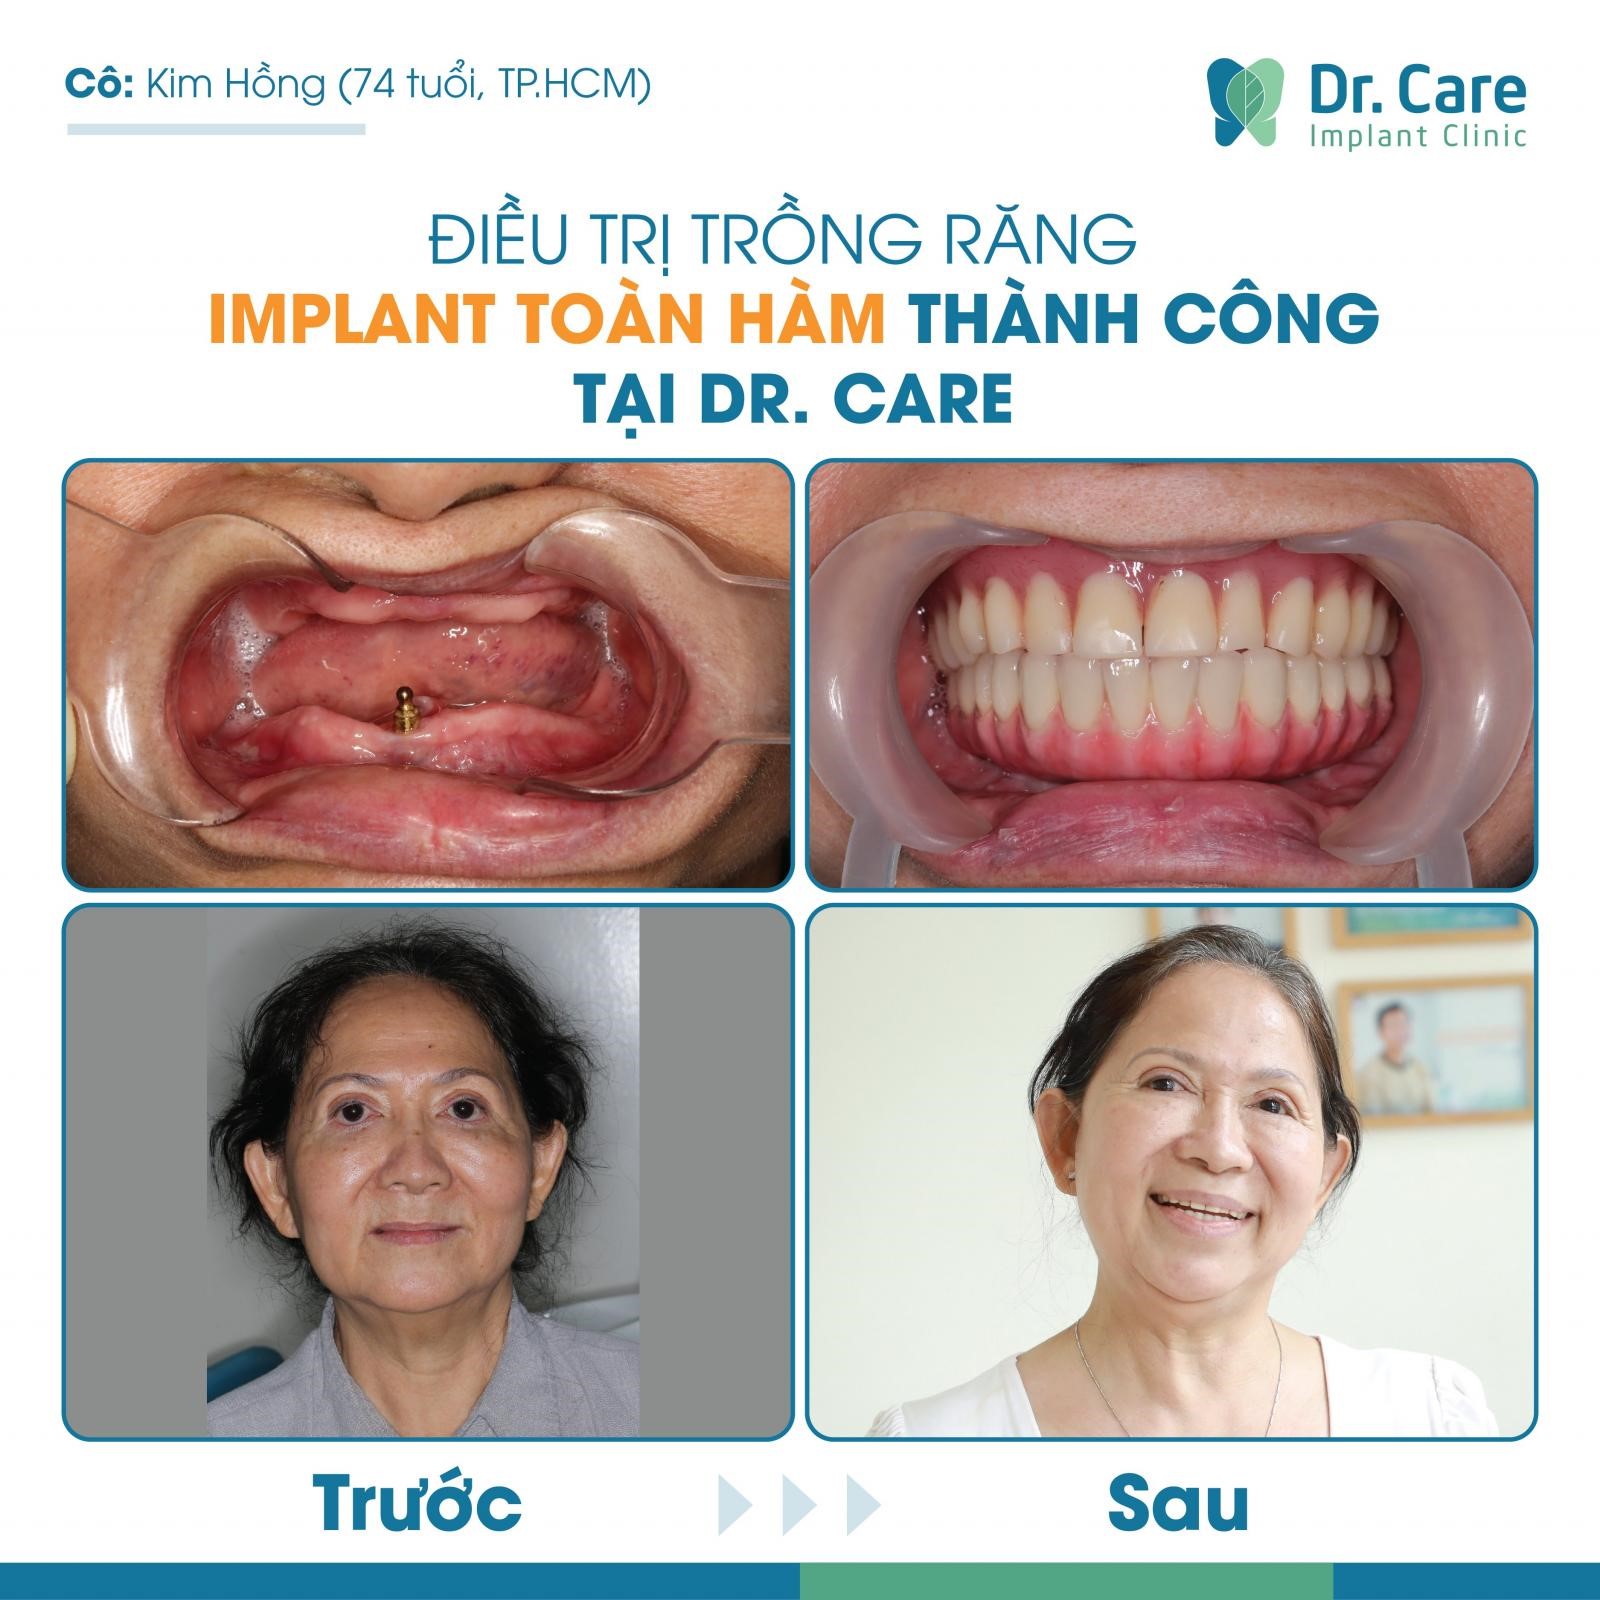 Cô Kim Hồng tại Tp, HCM trồng răng Implant All on - 4 thành công tại Dr. Care